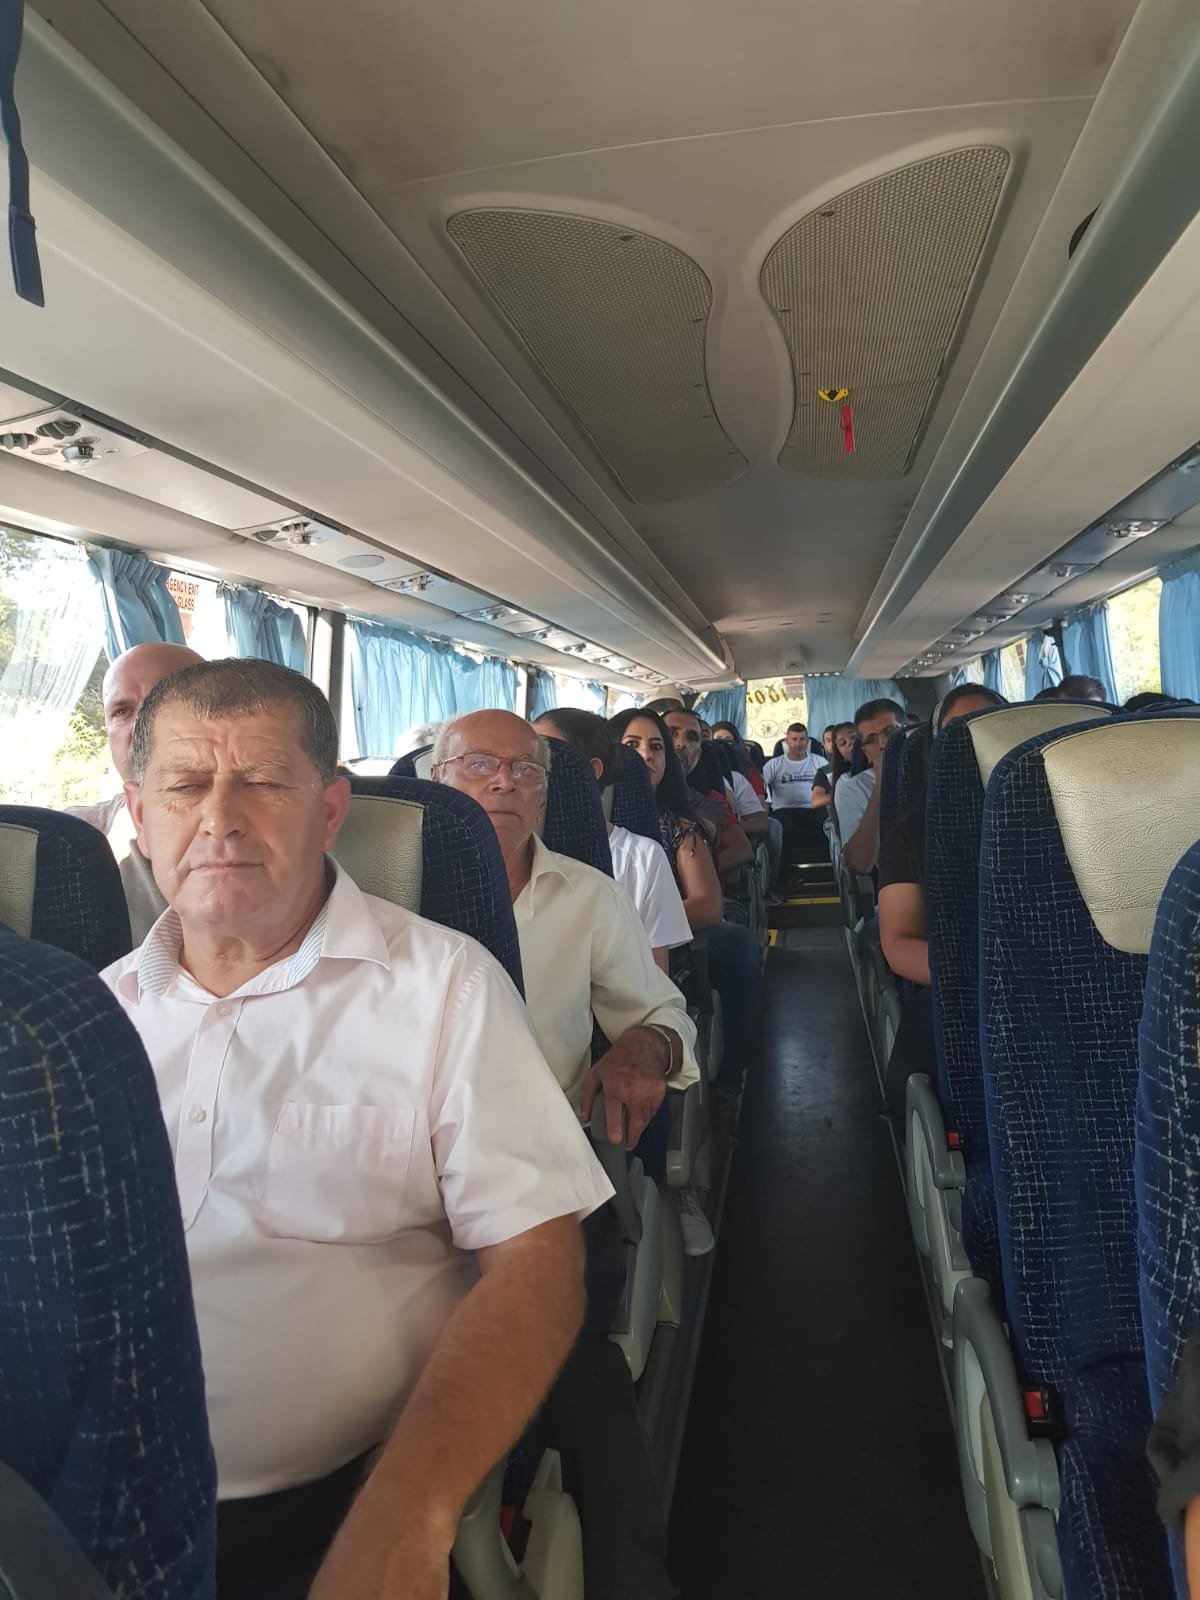 انطلاق الحافلات الى تل أبيب للمشاركة في امّ المظاهرات -4